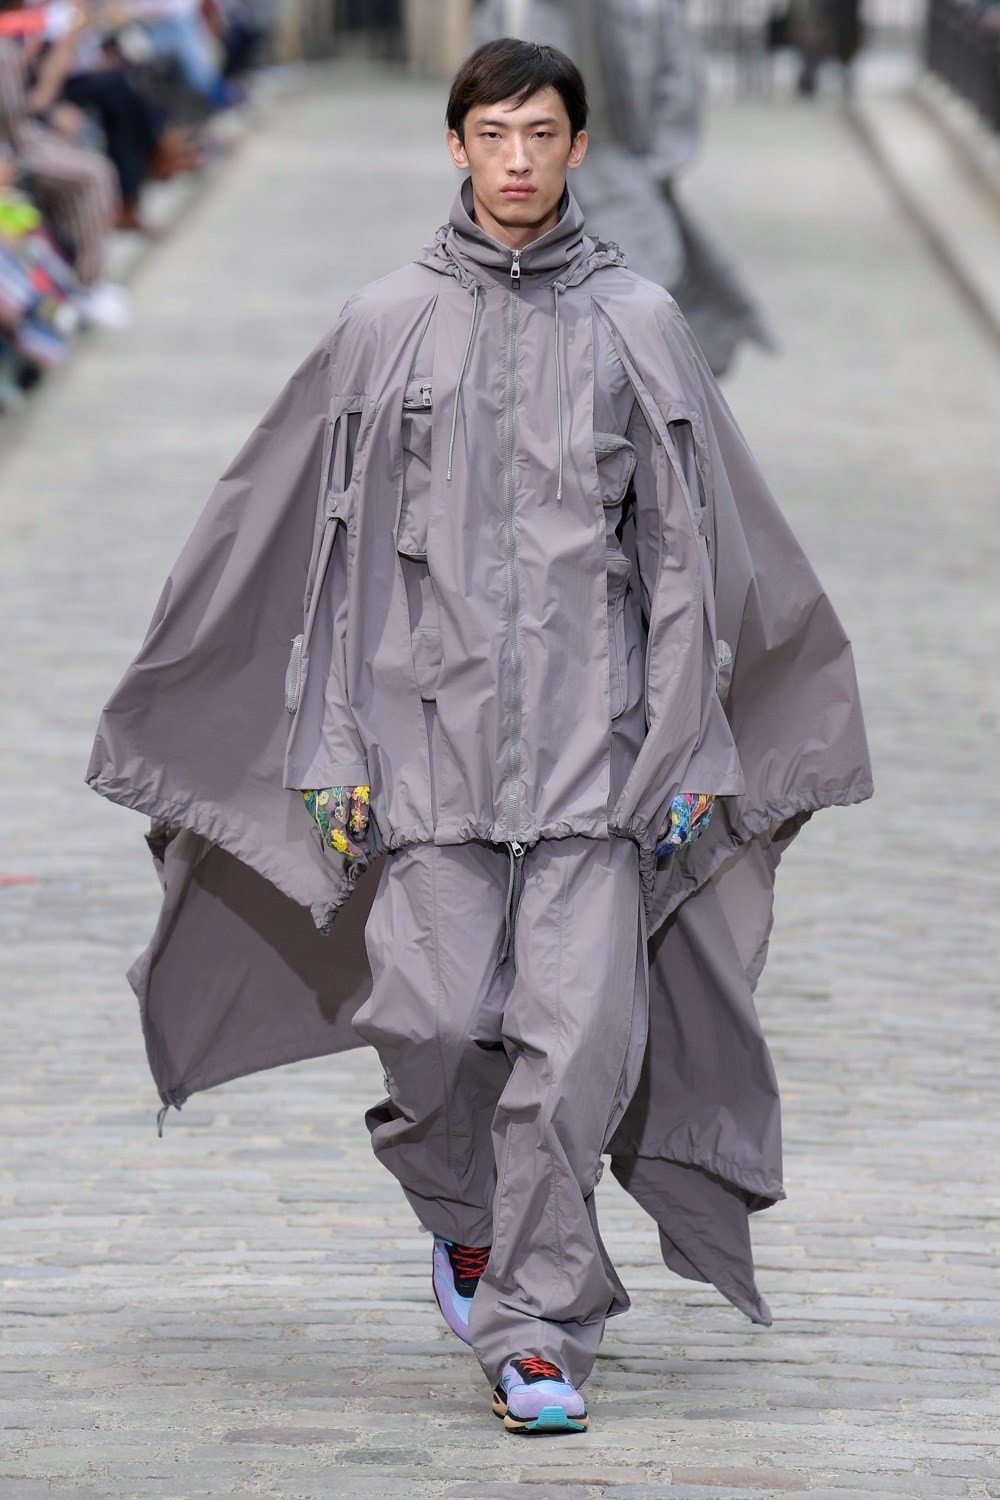 Louis Vuitton Virgil Abloh Spring Summer 2020 Paris Fashion Week Men's Show Collection Raincoat Pants Grey